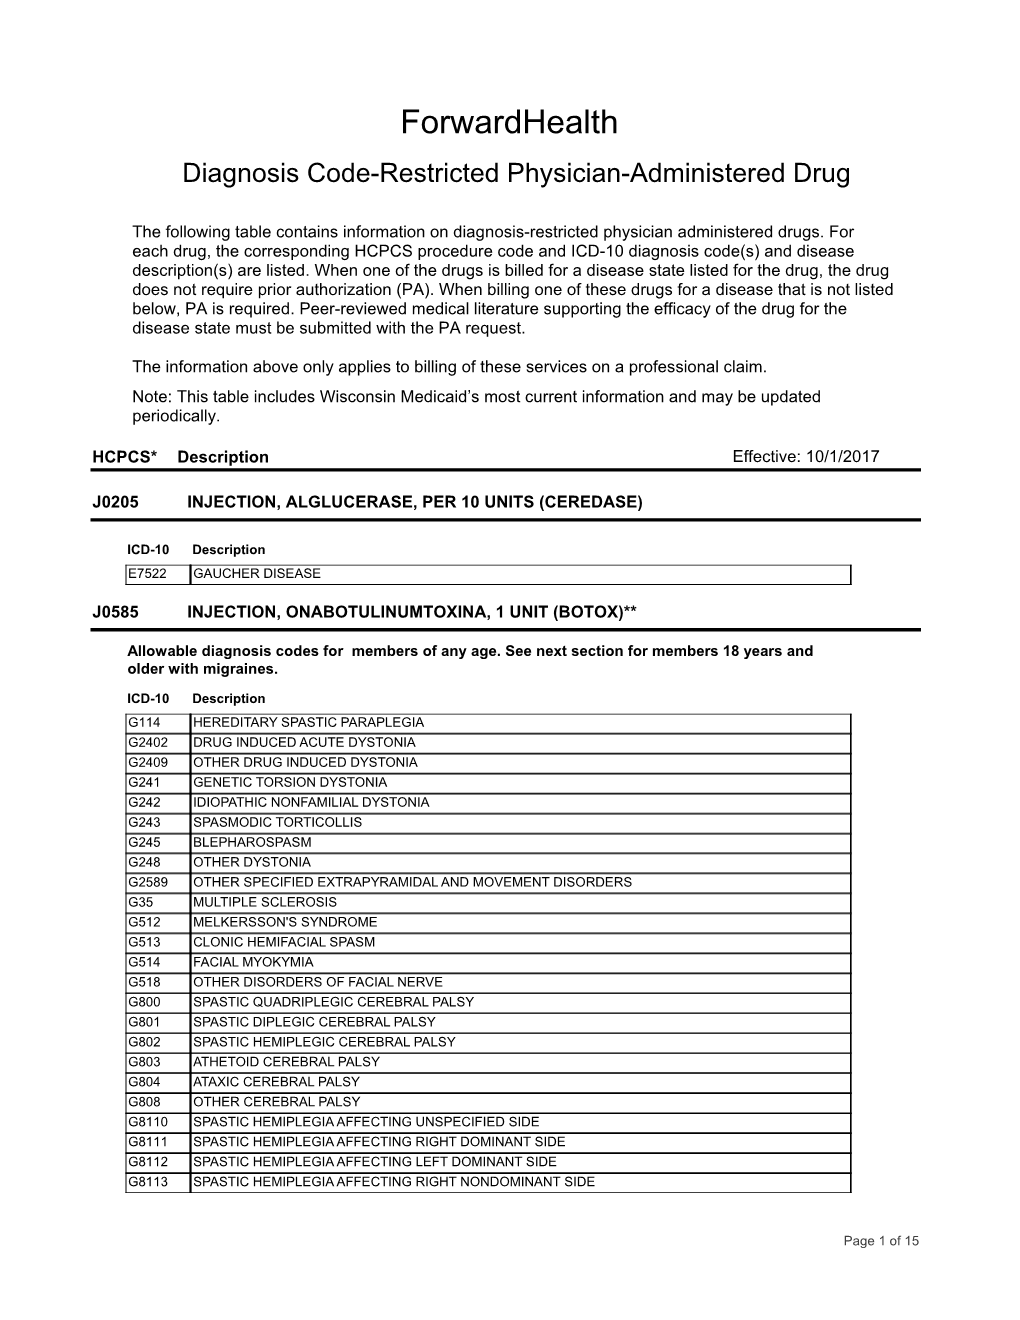 Z-Rpt Procedure Code Published Table